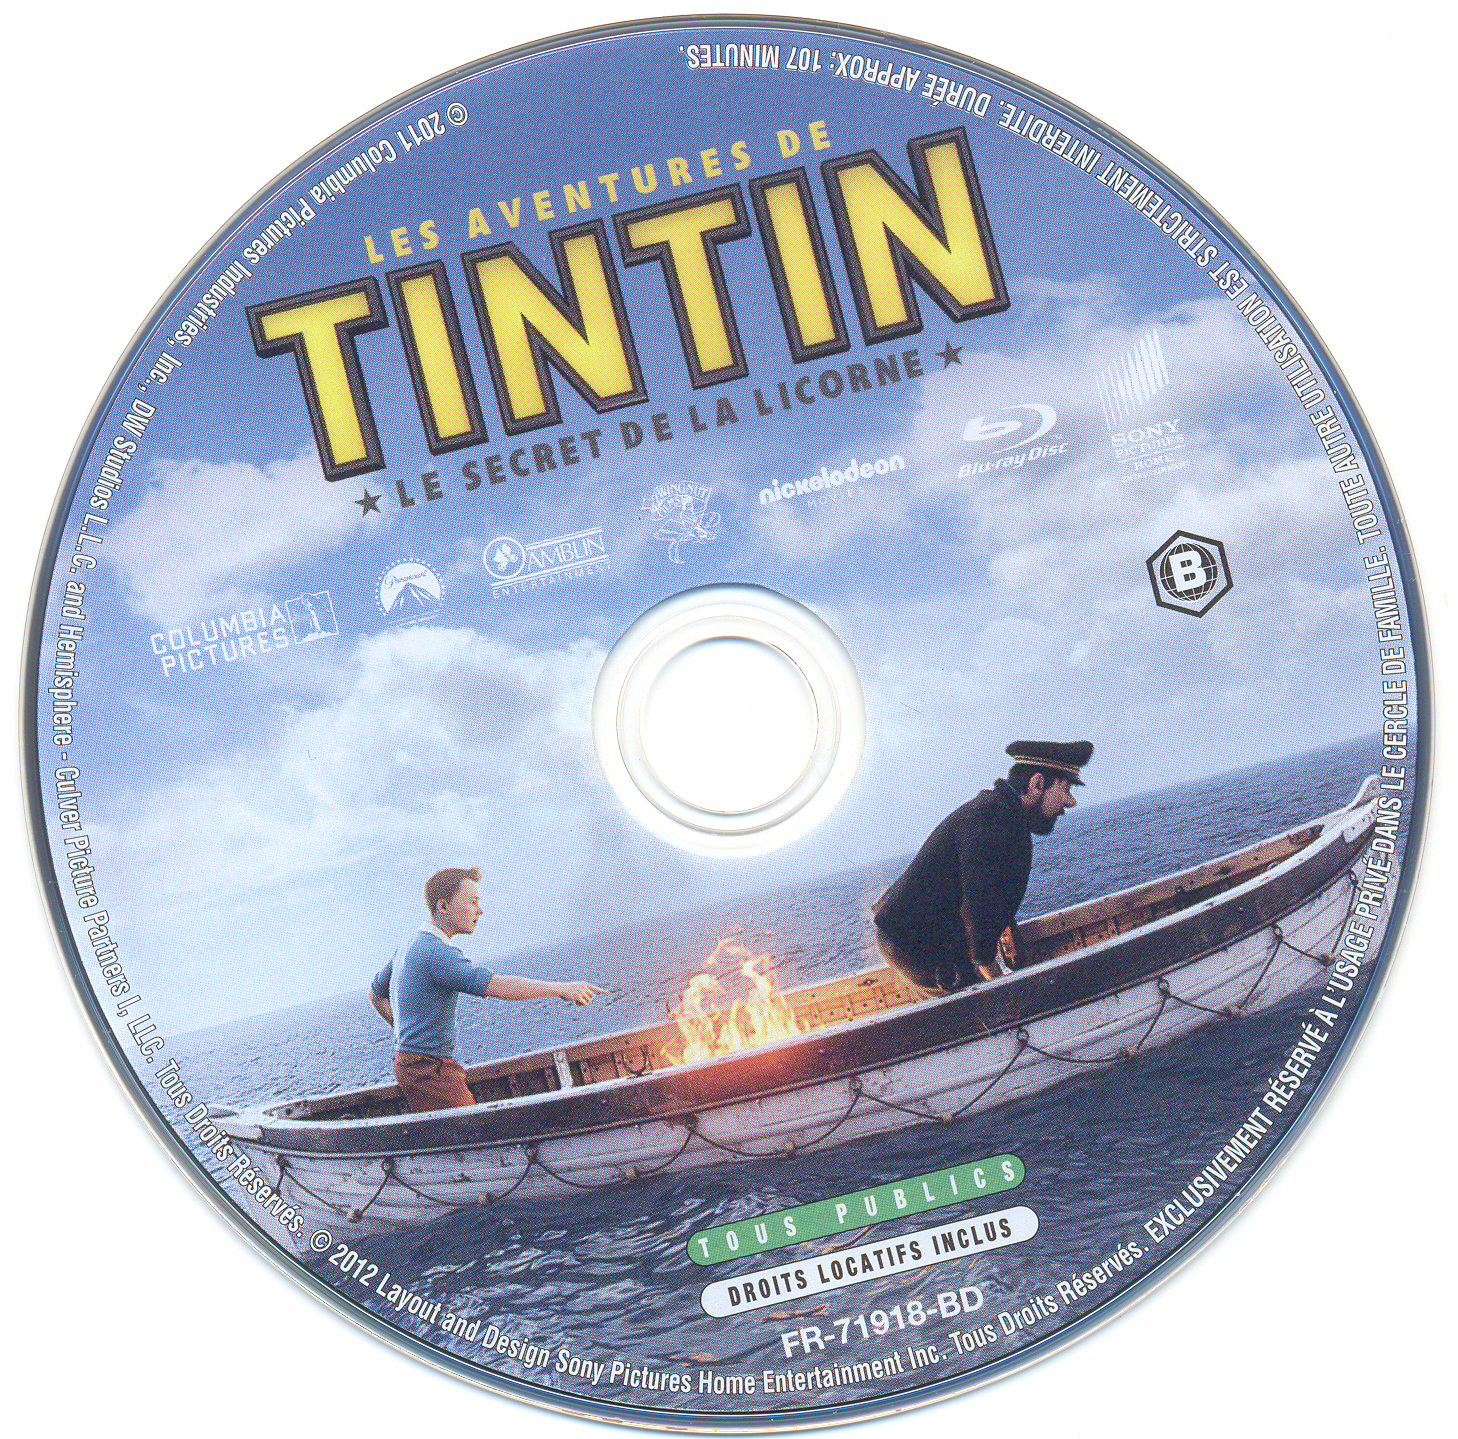 Les aventures de Tintin le secret de la Licorne (BLU-RAY)